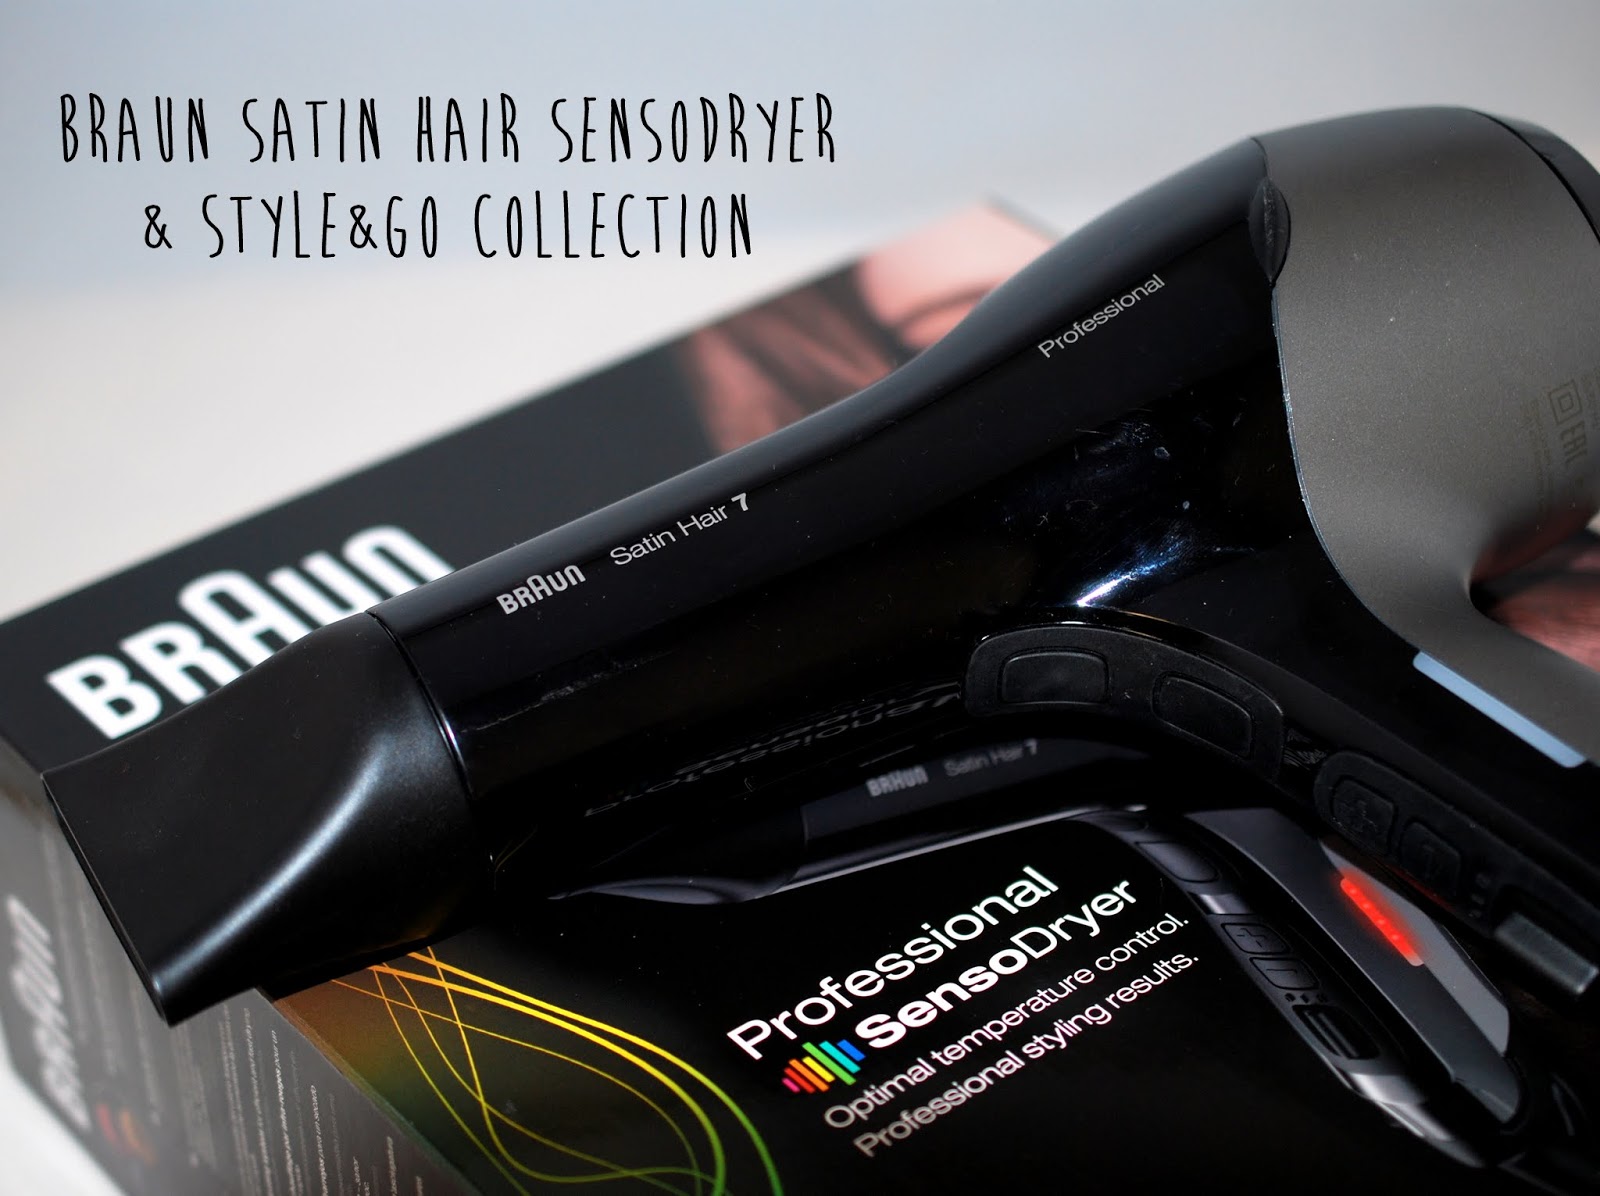 Haarpflege} Style&Go Collection und Satin sunshine 7 Professional I von Hair - SensoDryer (Sponsored) Braun need